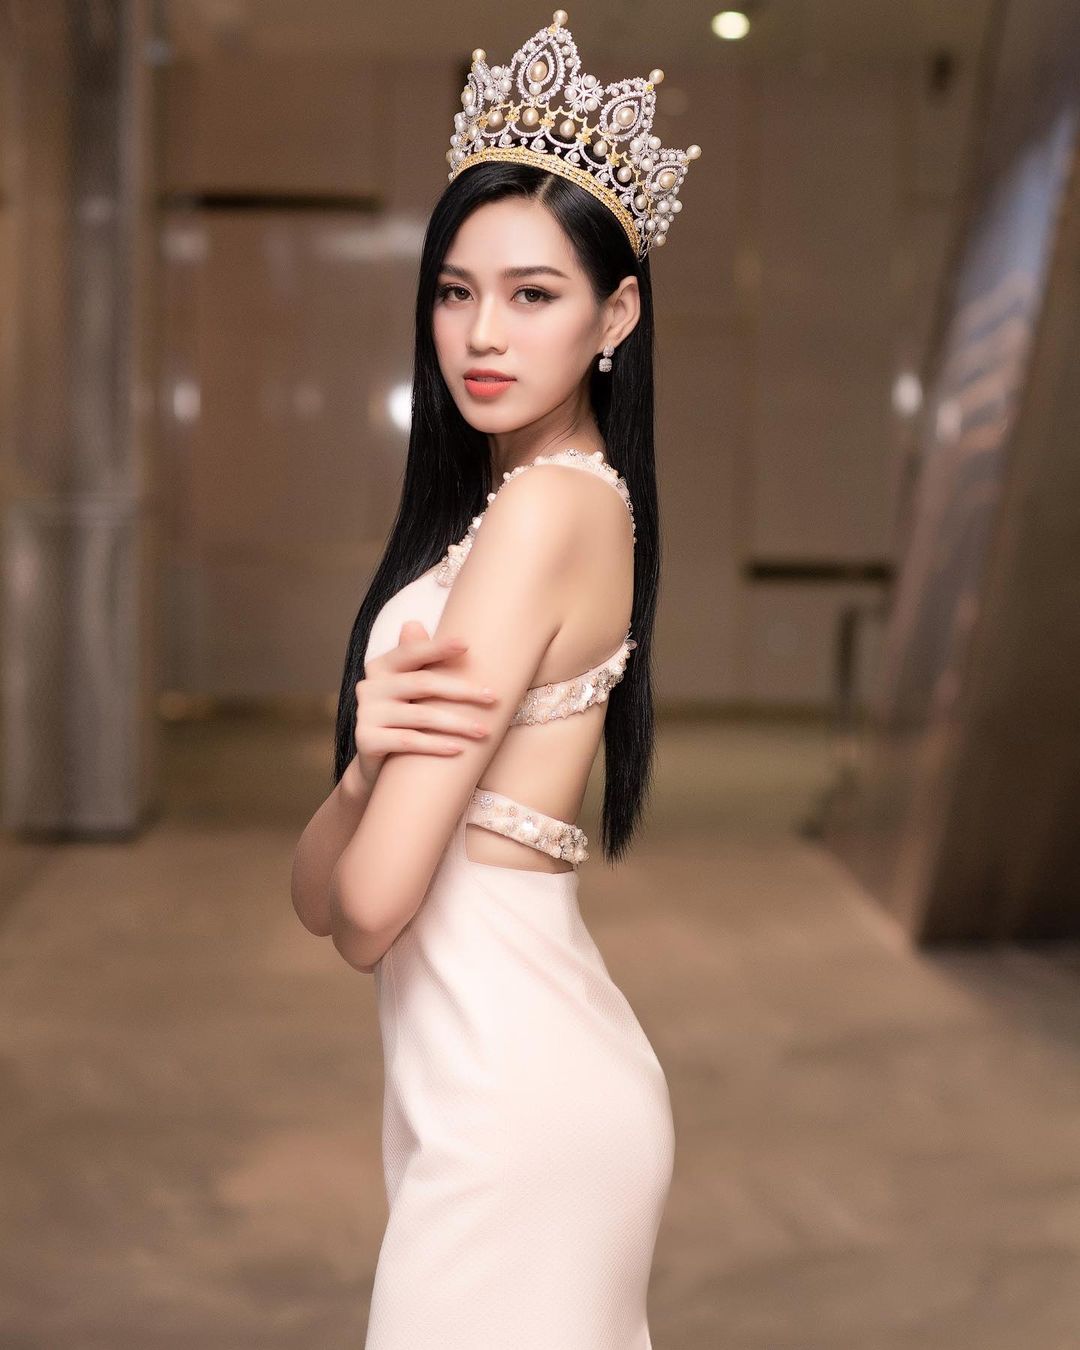 Hoa hậu Đỗ Thị Hà cũng có "điểm chết" vóc dáng khó che giấu - 7